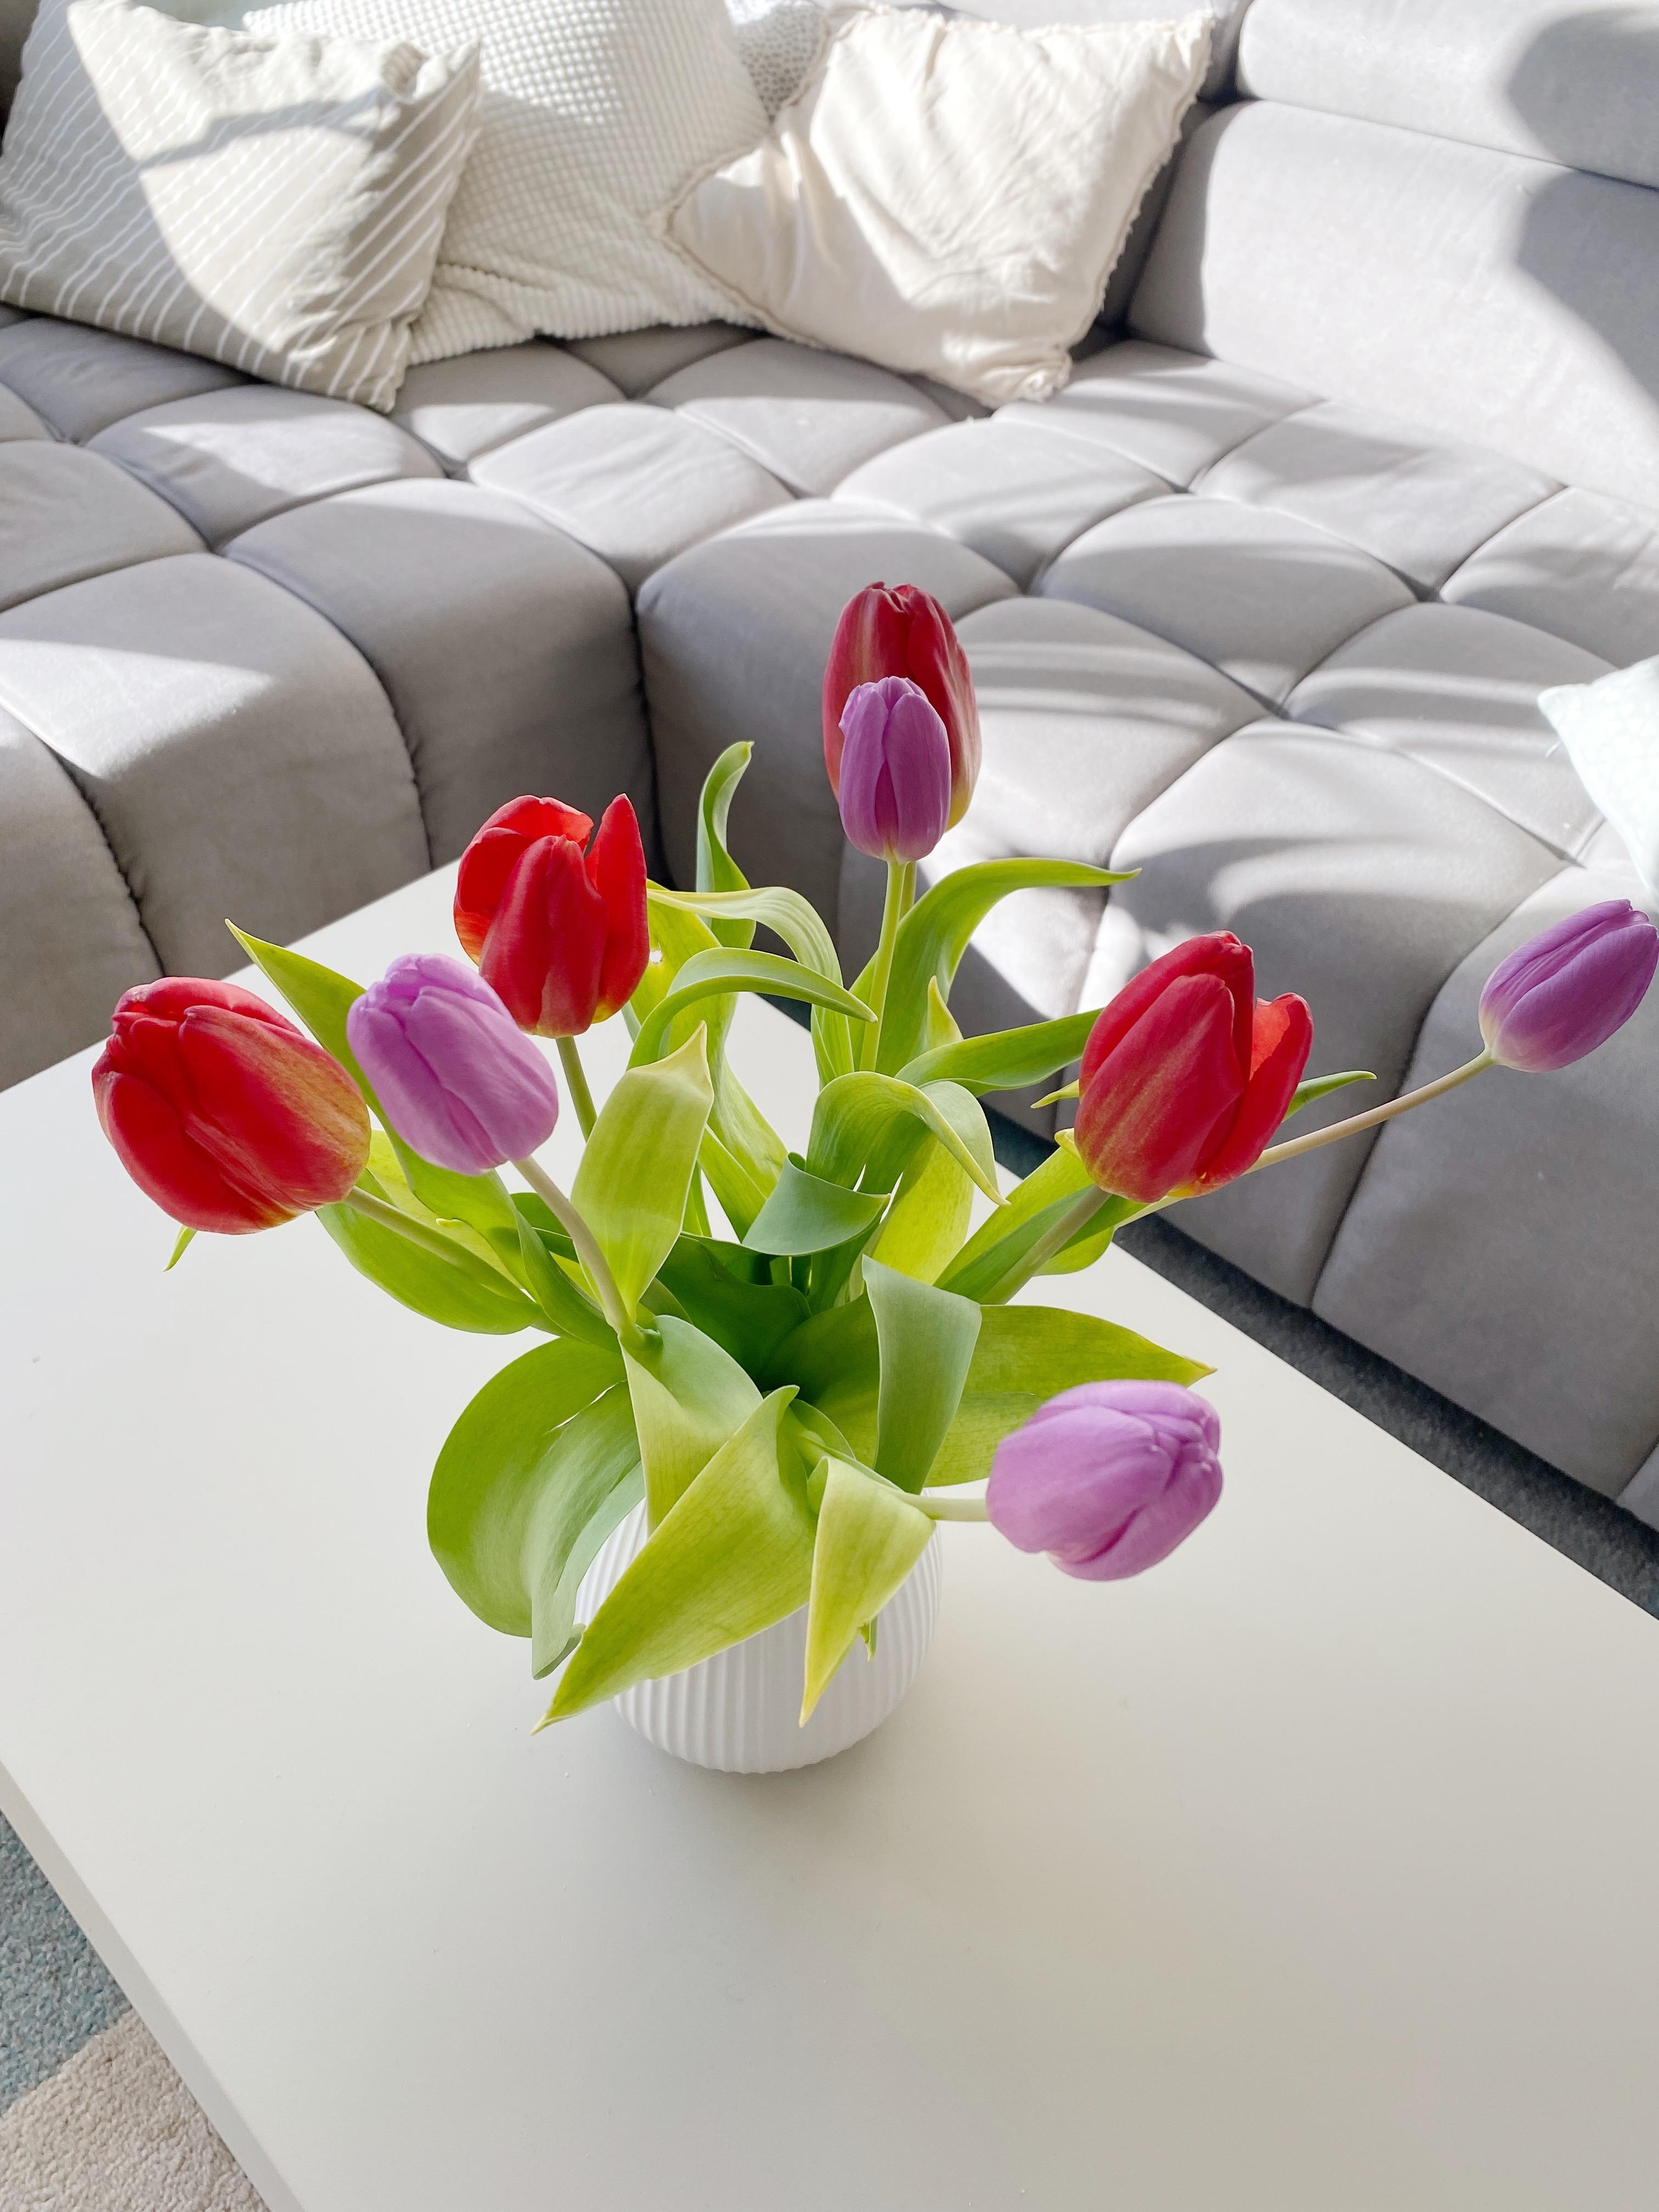 Sonne, Frühlingsluft und Tulpen von Oma 🌷 #frühling #tulpen #freshflowers #wohnzimmer #couchtisch #tischdeko #tabledecor